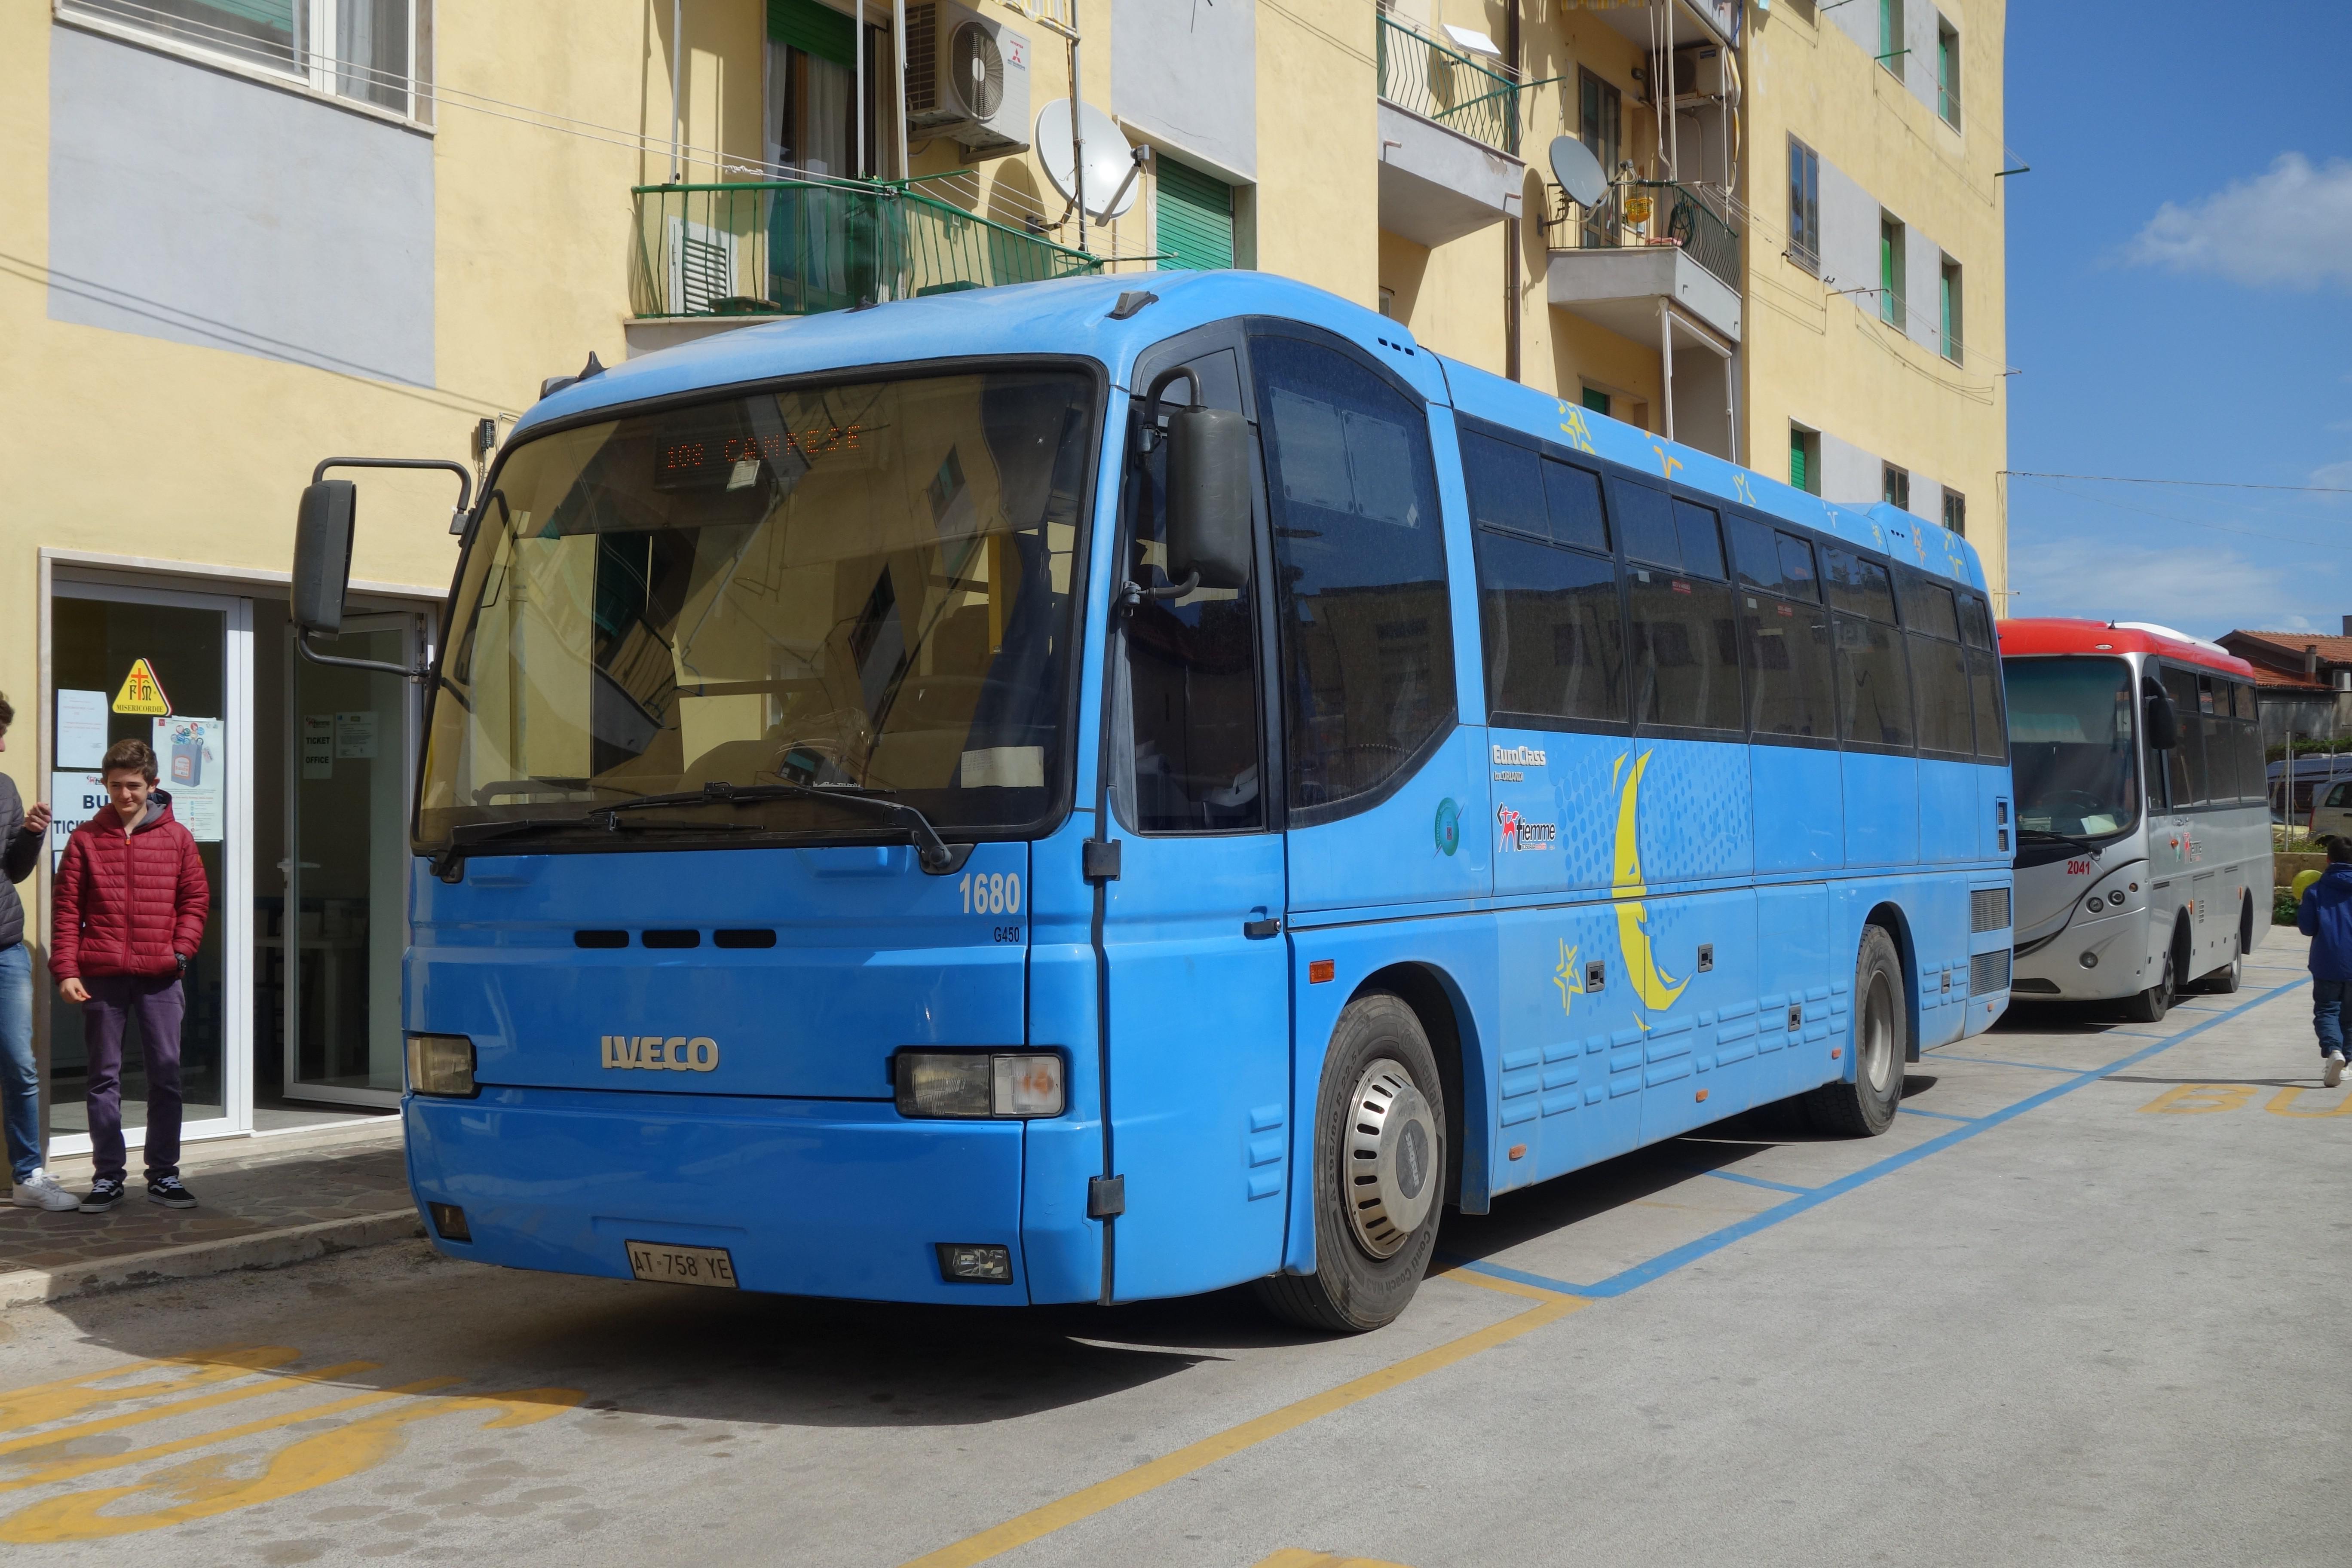 イヴェコ社製の青いバス